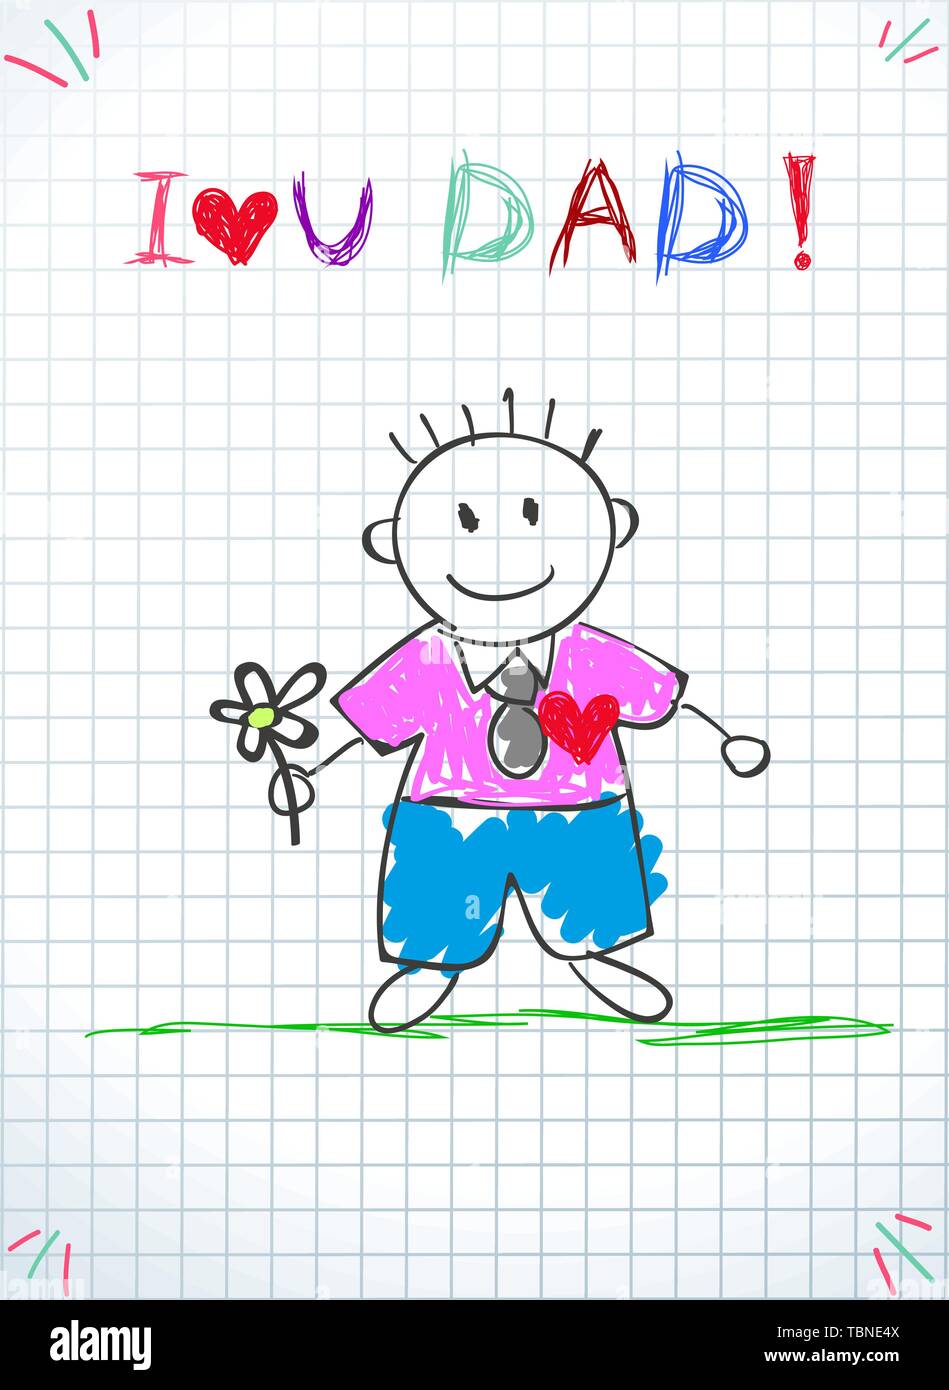 Ich liebe Dich Papa, Happy Vatertag Grußkarte. Baby Zeichnung Abbildung mit Hand gezeichnet Papa halten Blume auf grünem Gras auf kariertem Papier Bac stehen Stock Vektor